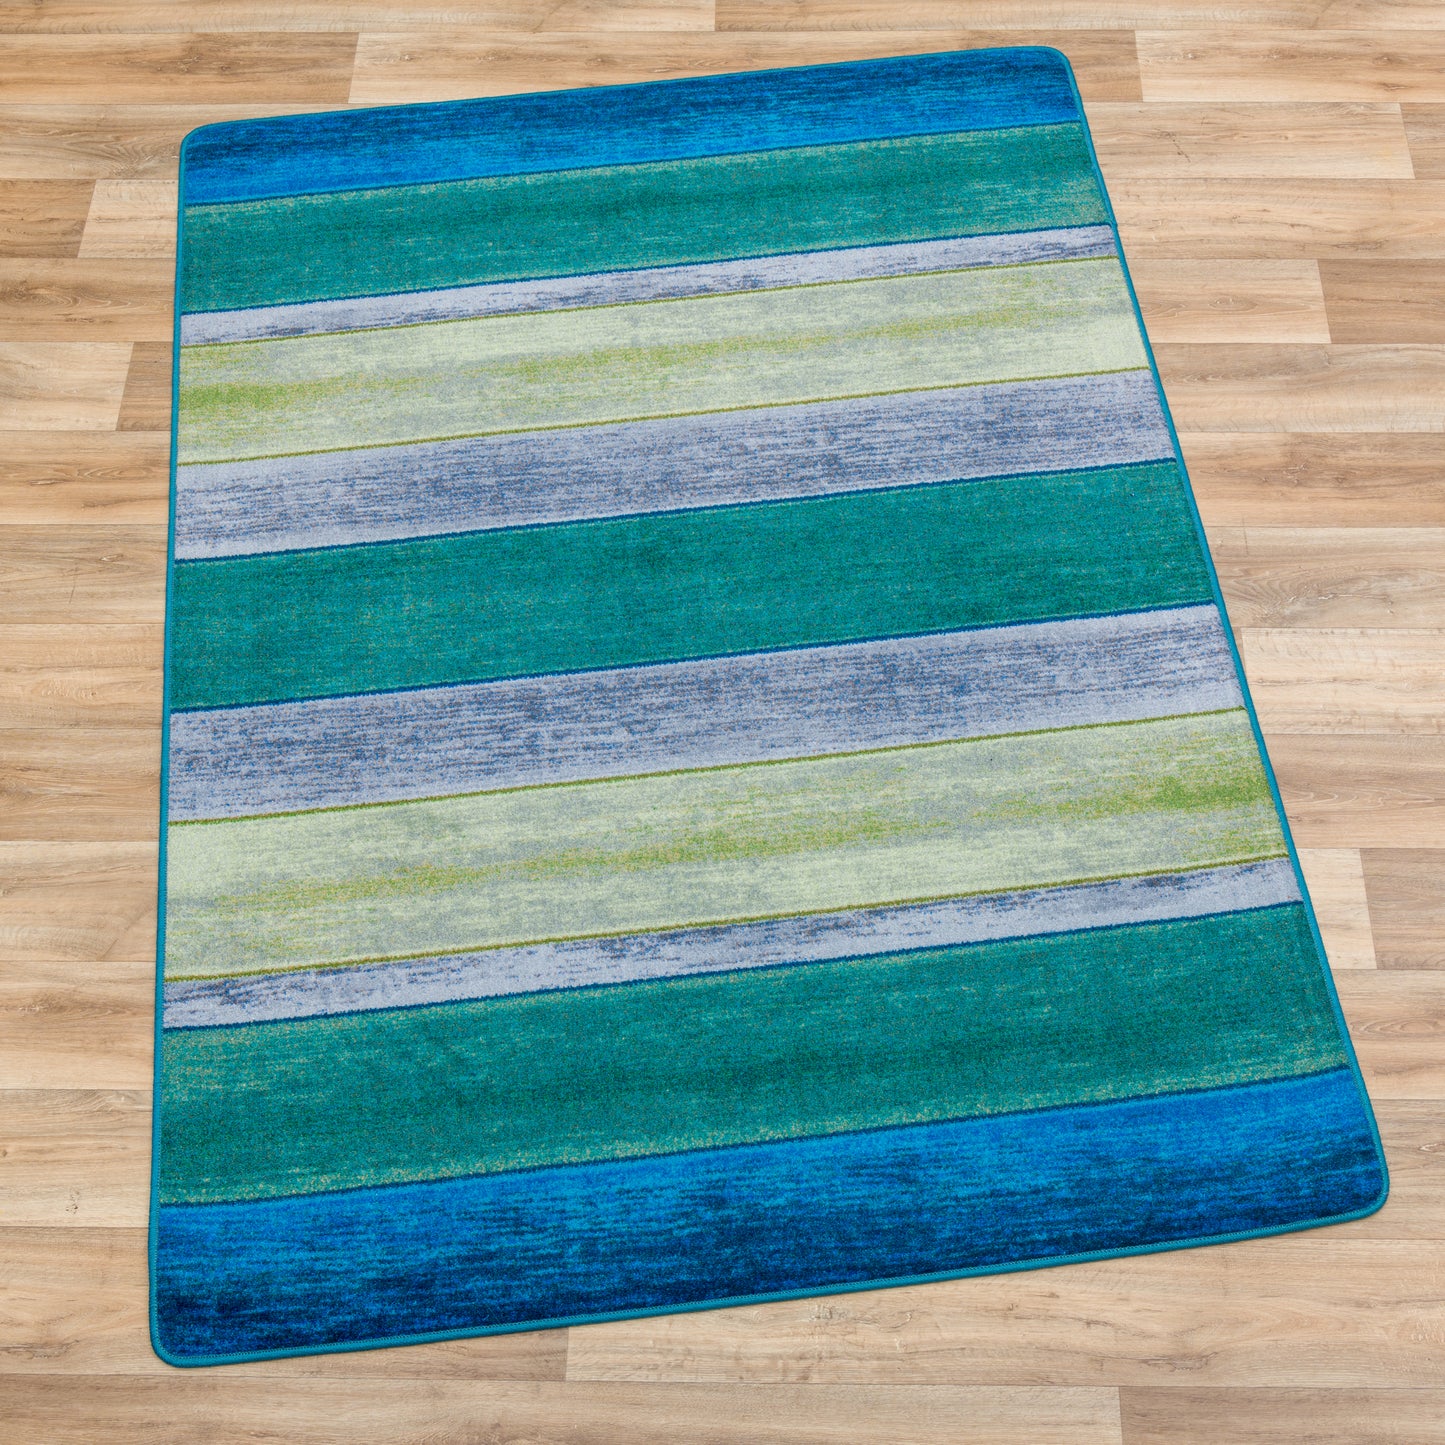 Bungalow Stripe Coastal Rug - Tranquil Aqua & Blue Design